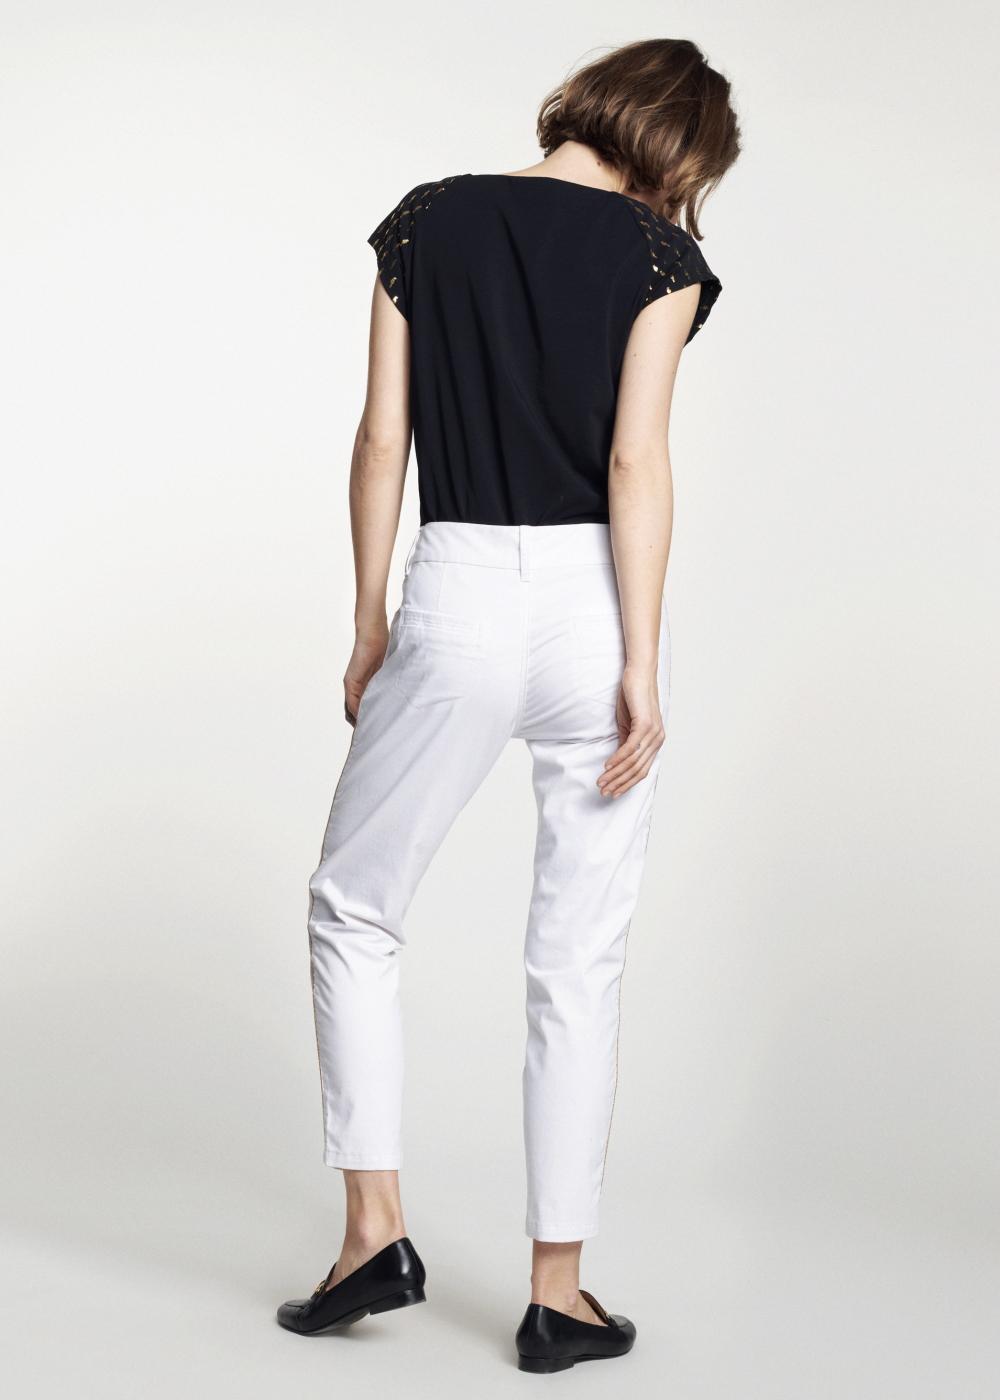 Białe spodnie damskie z lampasem SPODT-0056-11(W21)